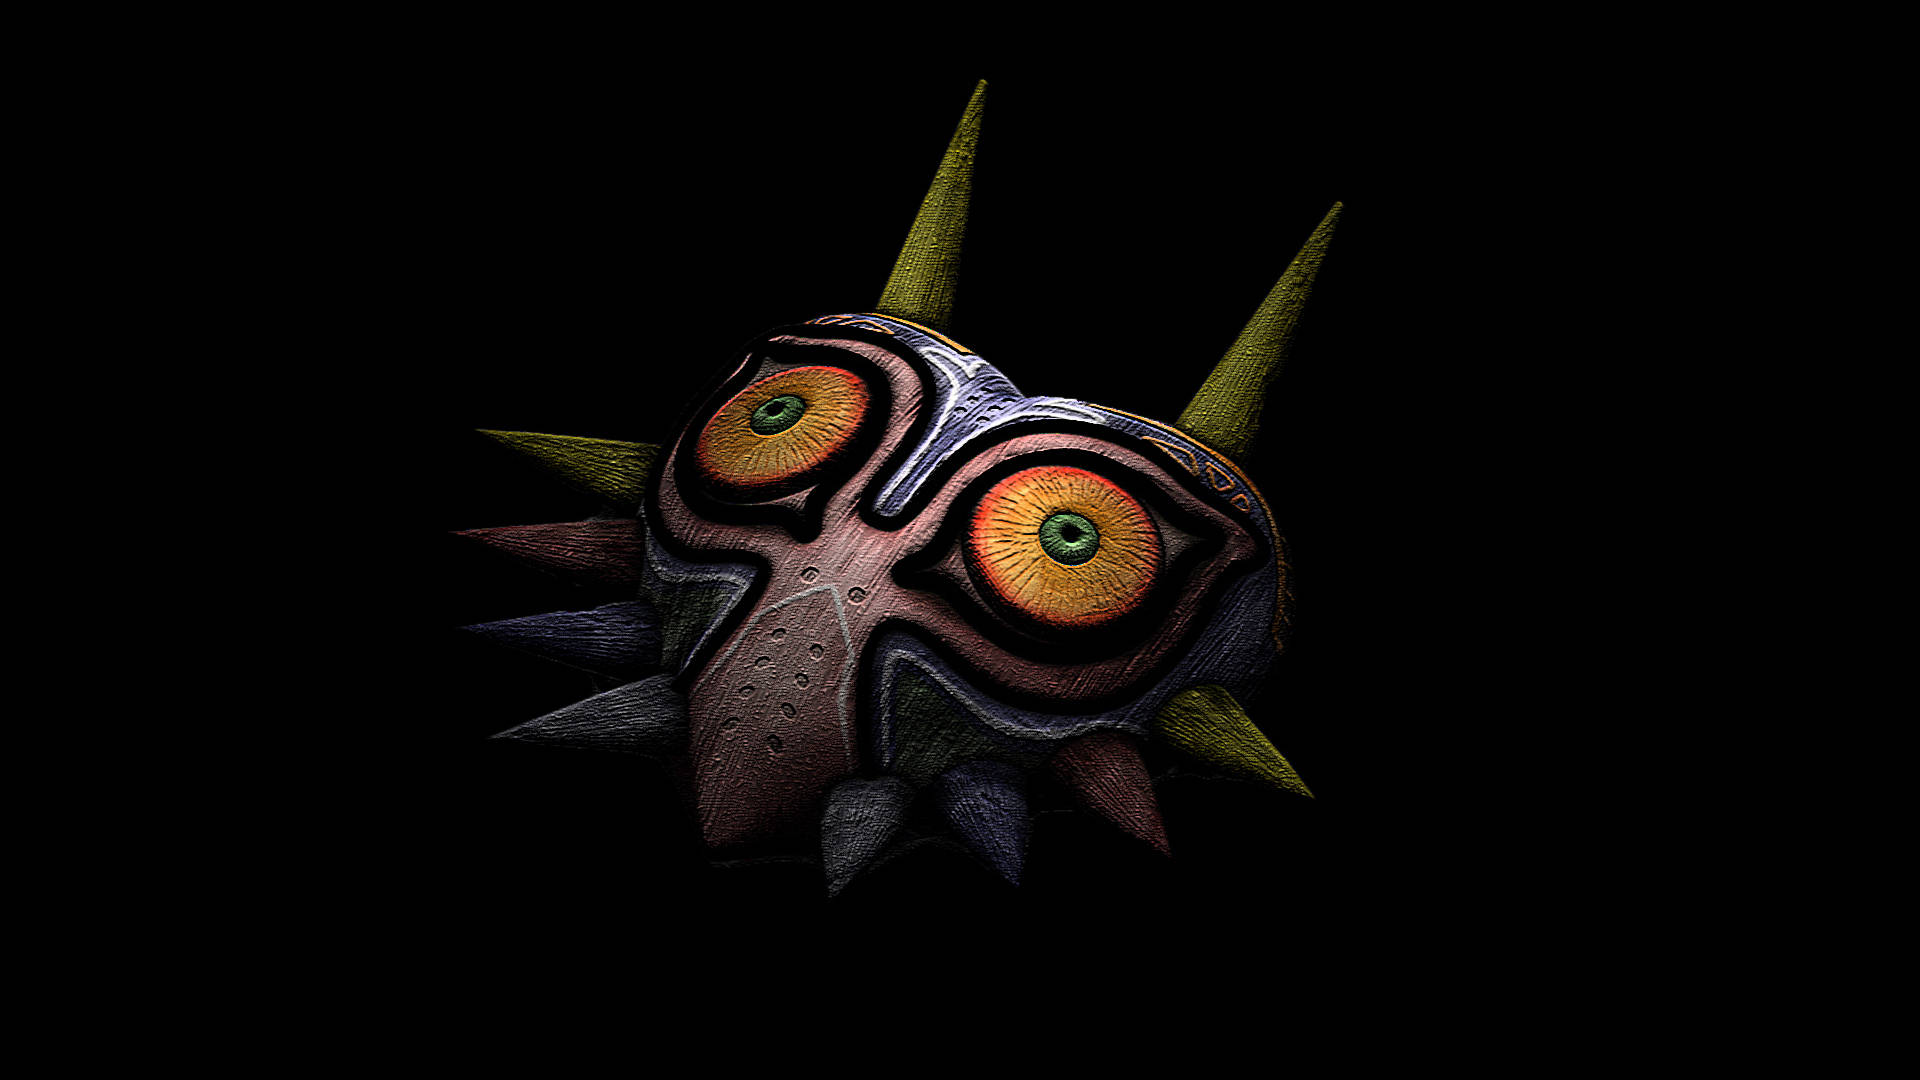 Majora's Mask Painting In Dark